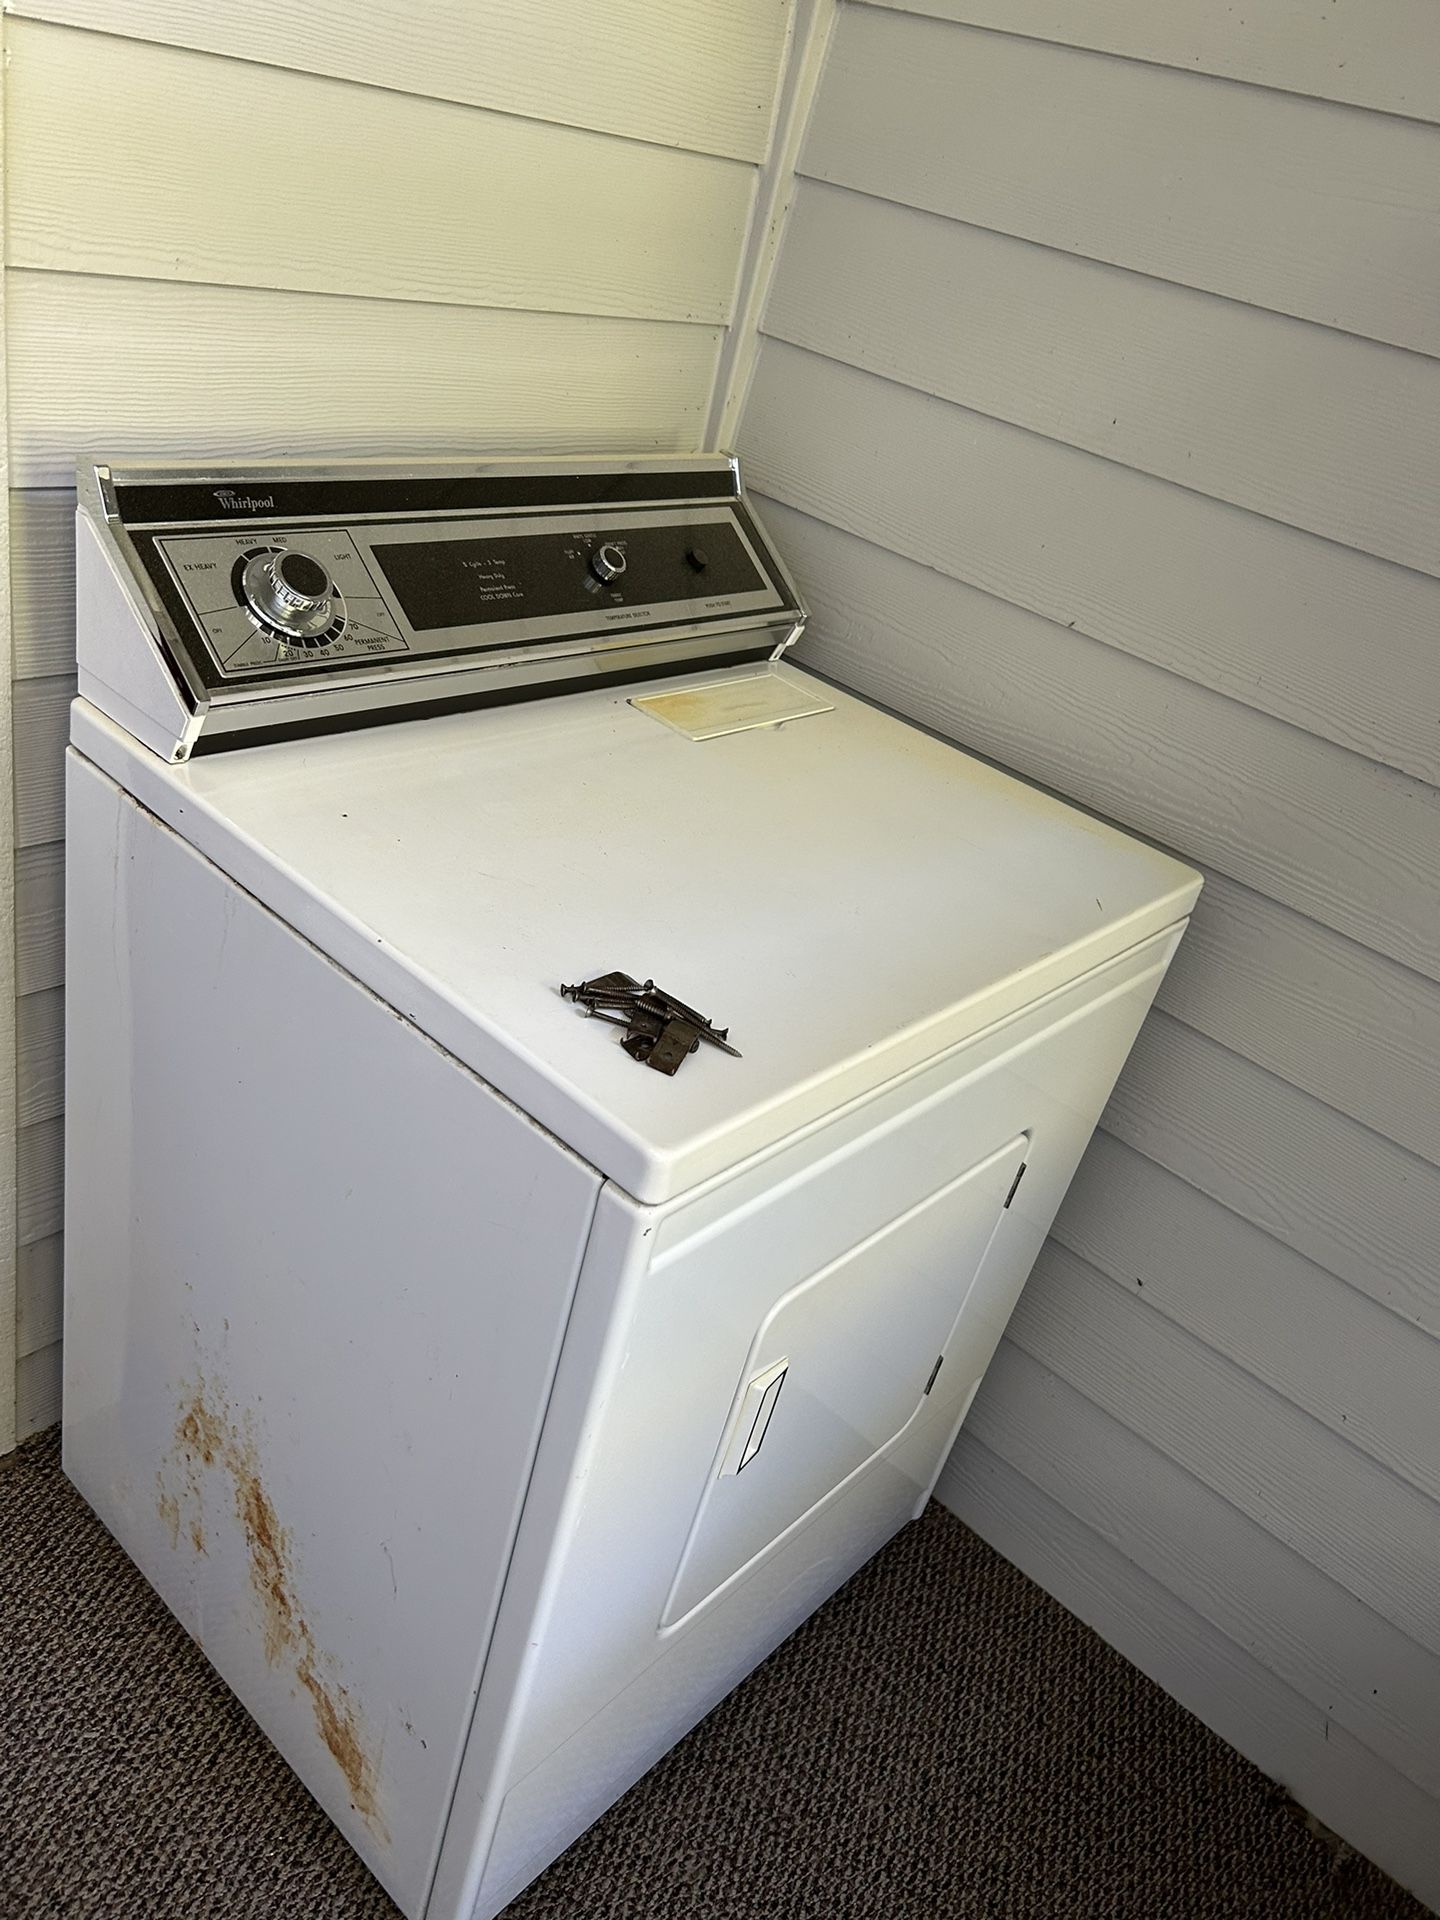 Old Dryer Machine